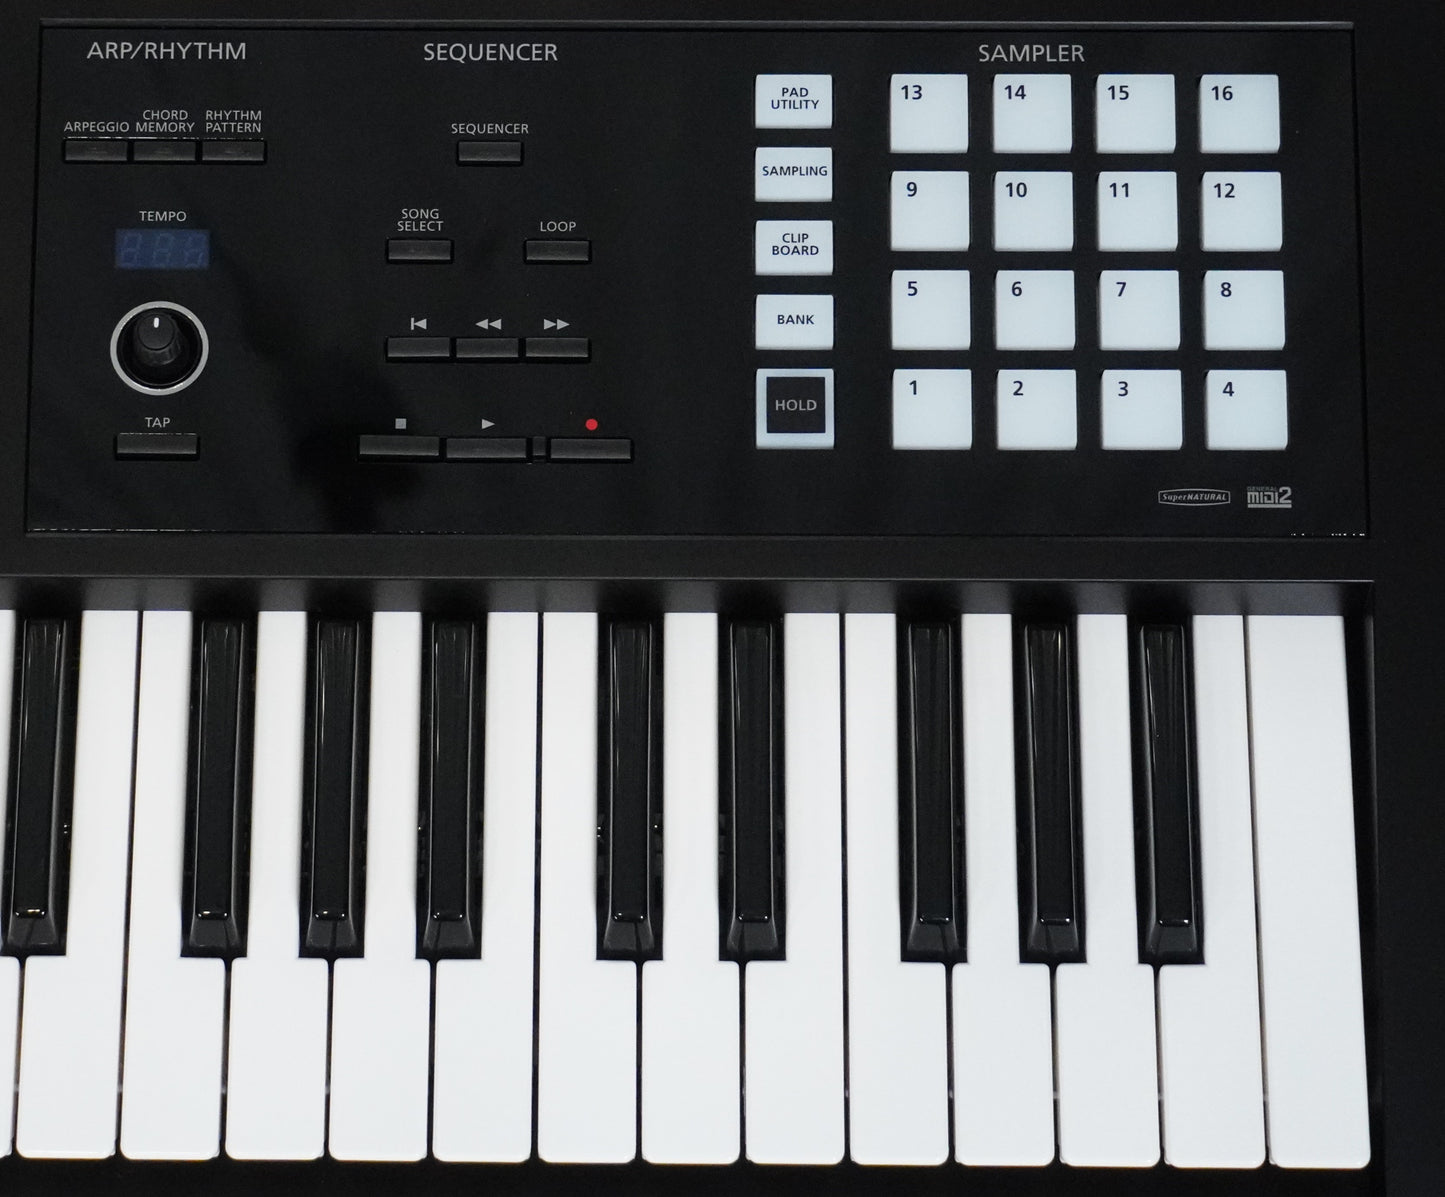 Roland FA-06 61 Key Music Workstation Synthesizer Keyboard